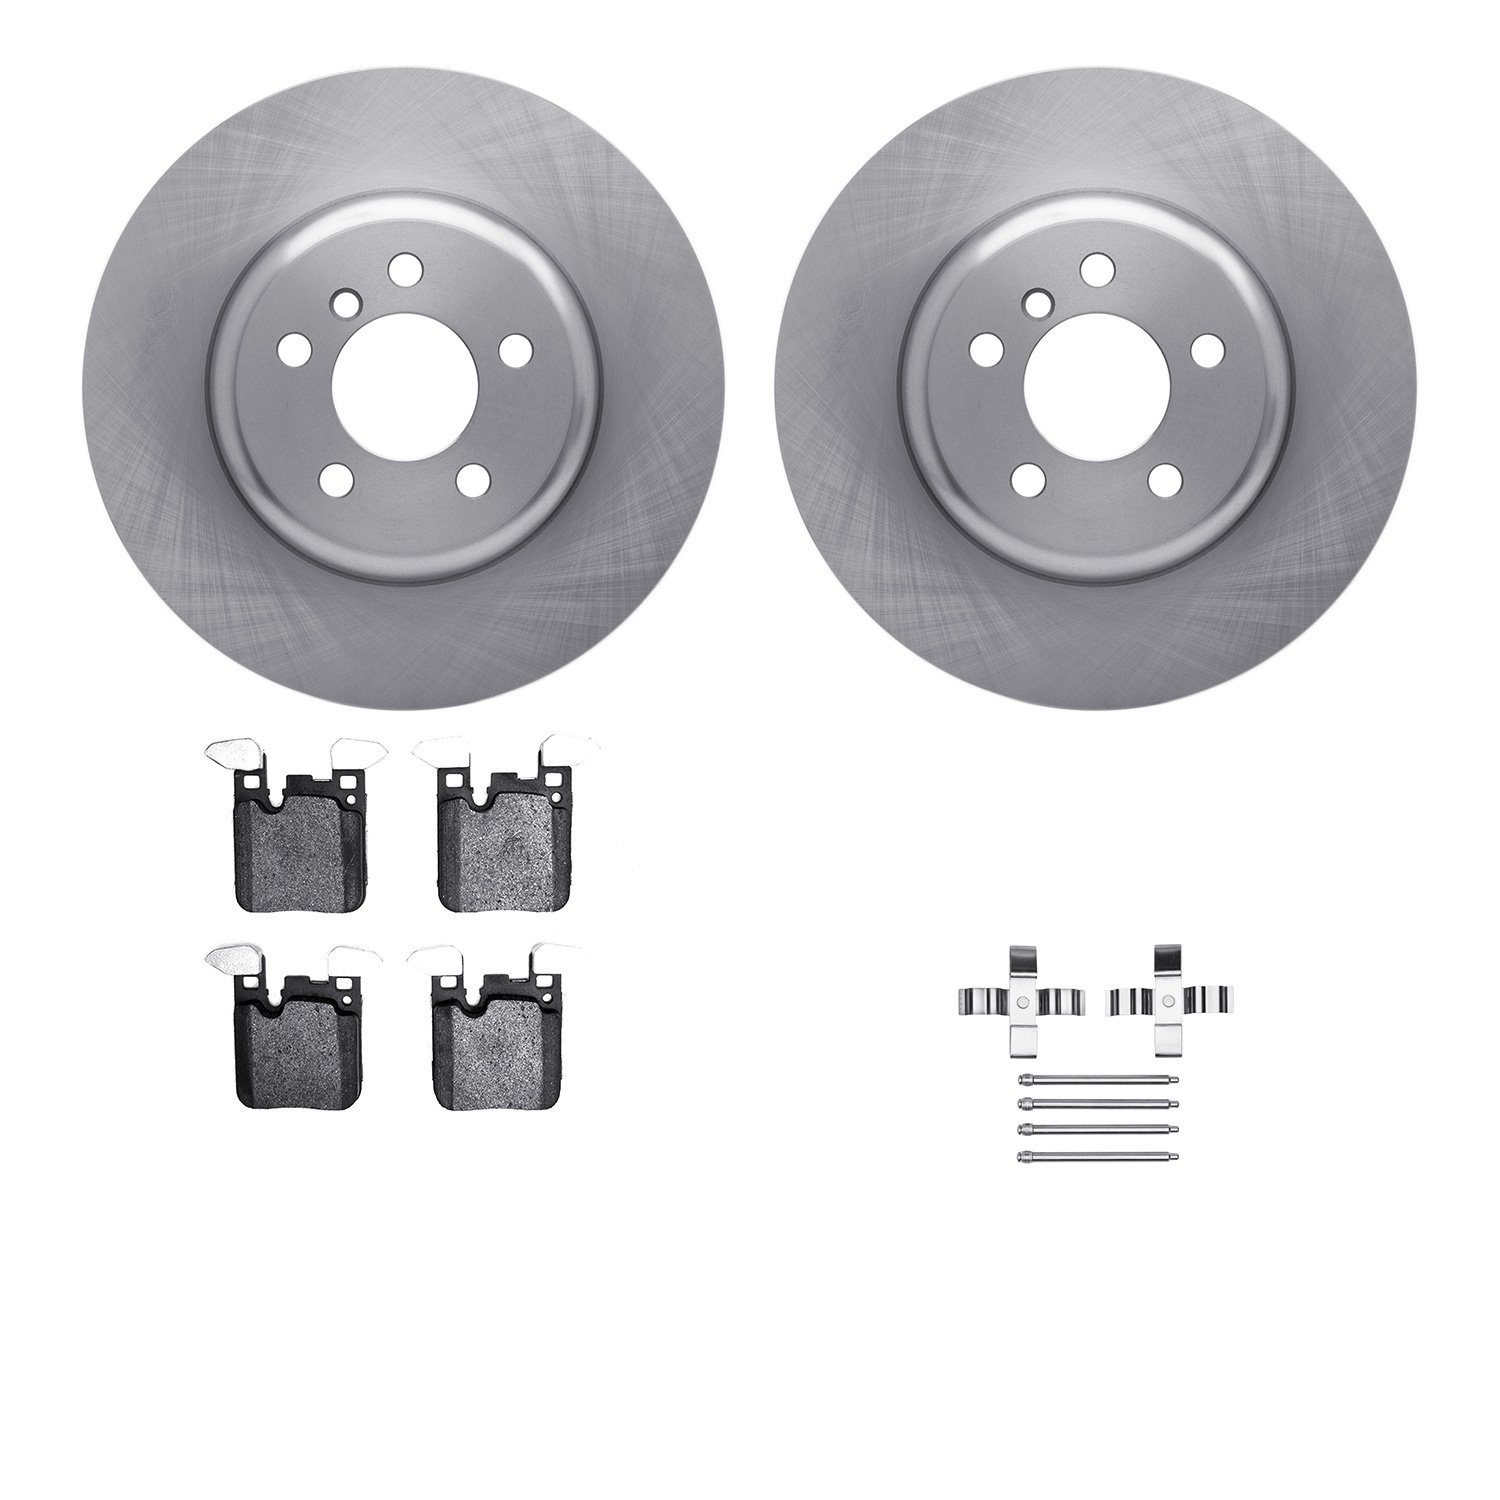 6612-31404 Brake Rotors w/5000 Euro Ceramic Brake Pads Kit with Hardware, 2013-2021 BMW, Position: Rear